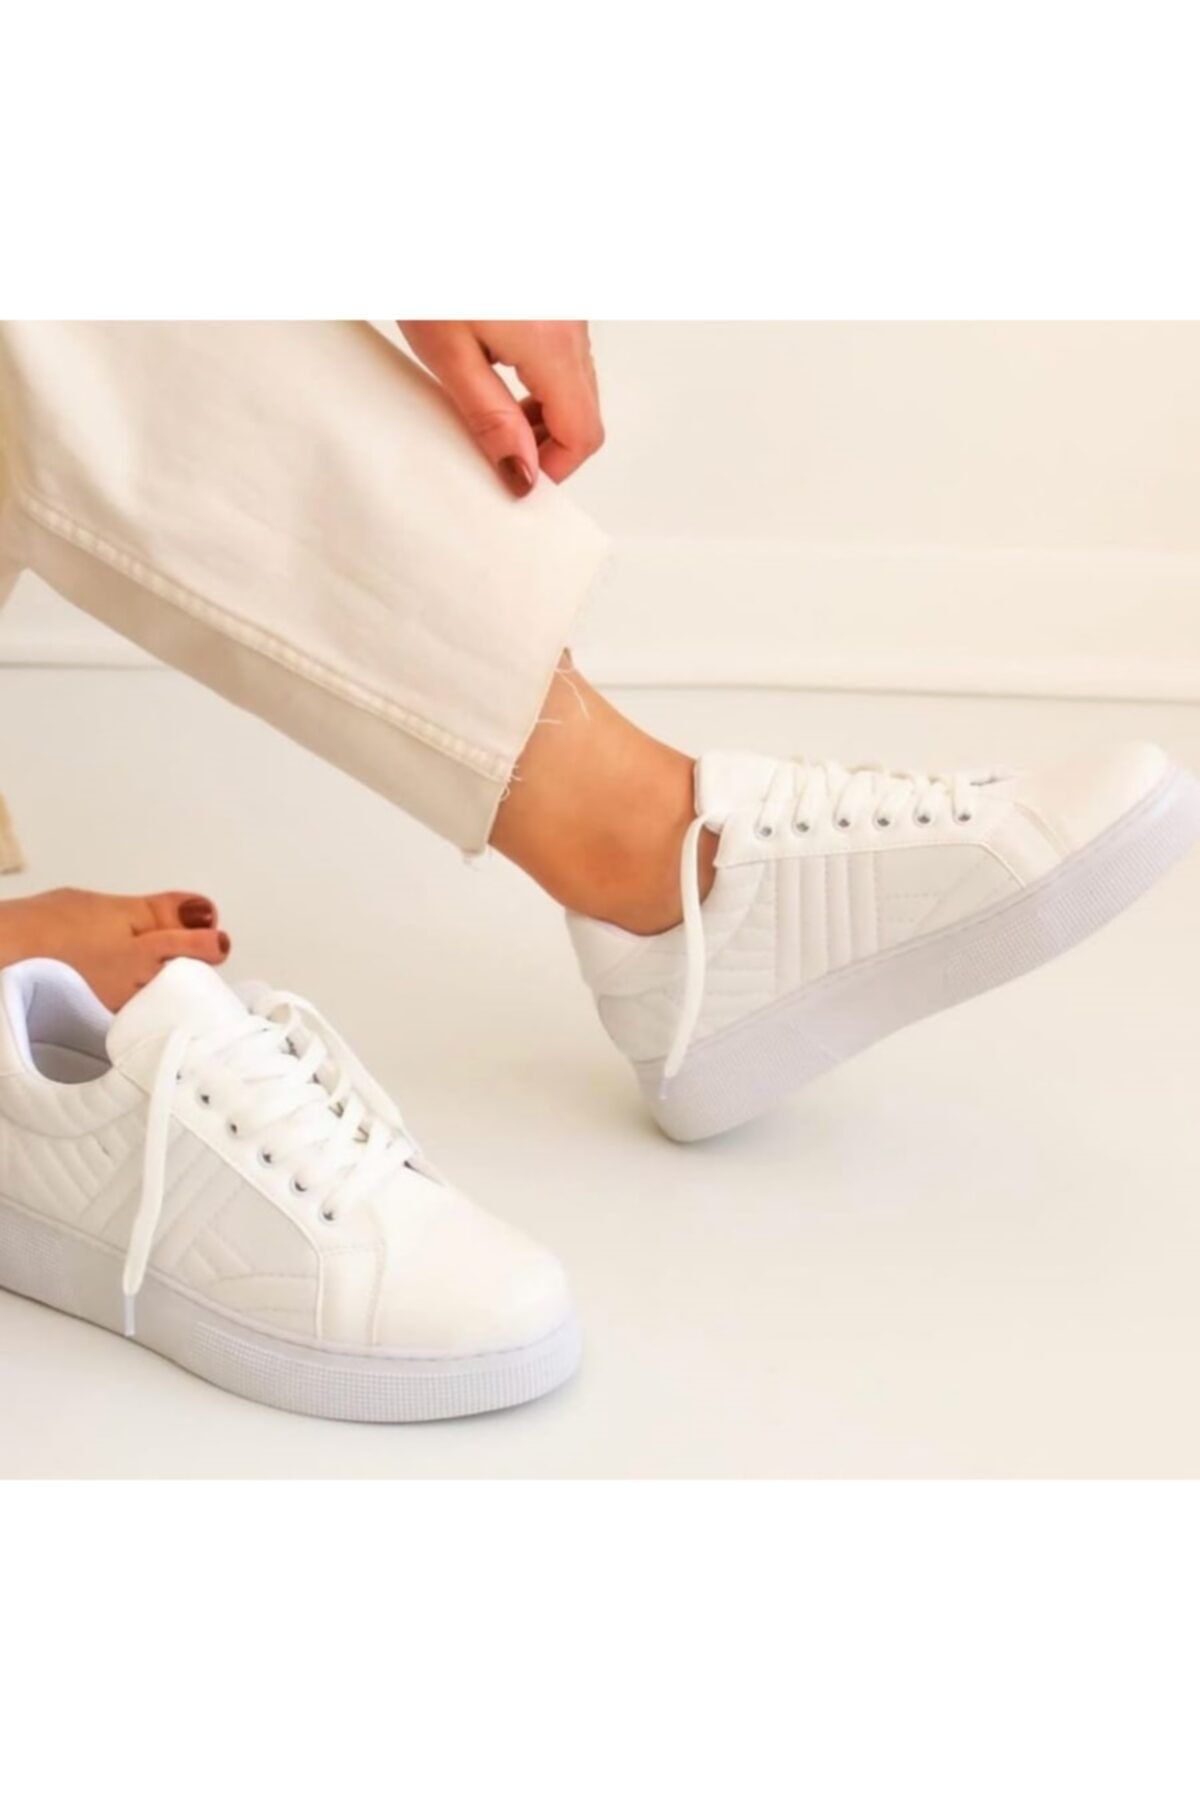 FLORİN Kadın Beyaz Rugan Kalın Taban Sneaker Spor Ayakkabı Yürüyüş Bağcıklı Günlük Antreman